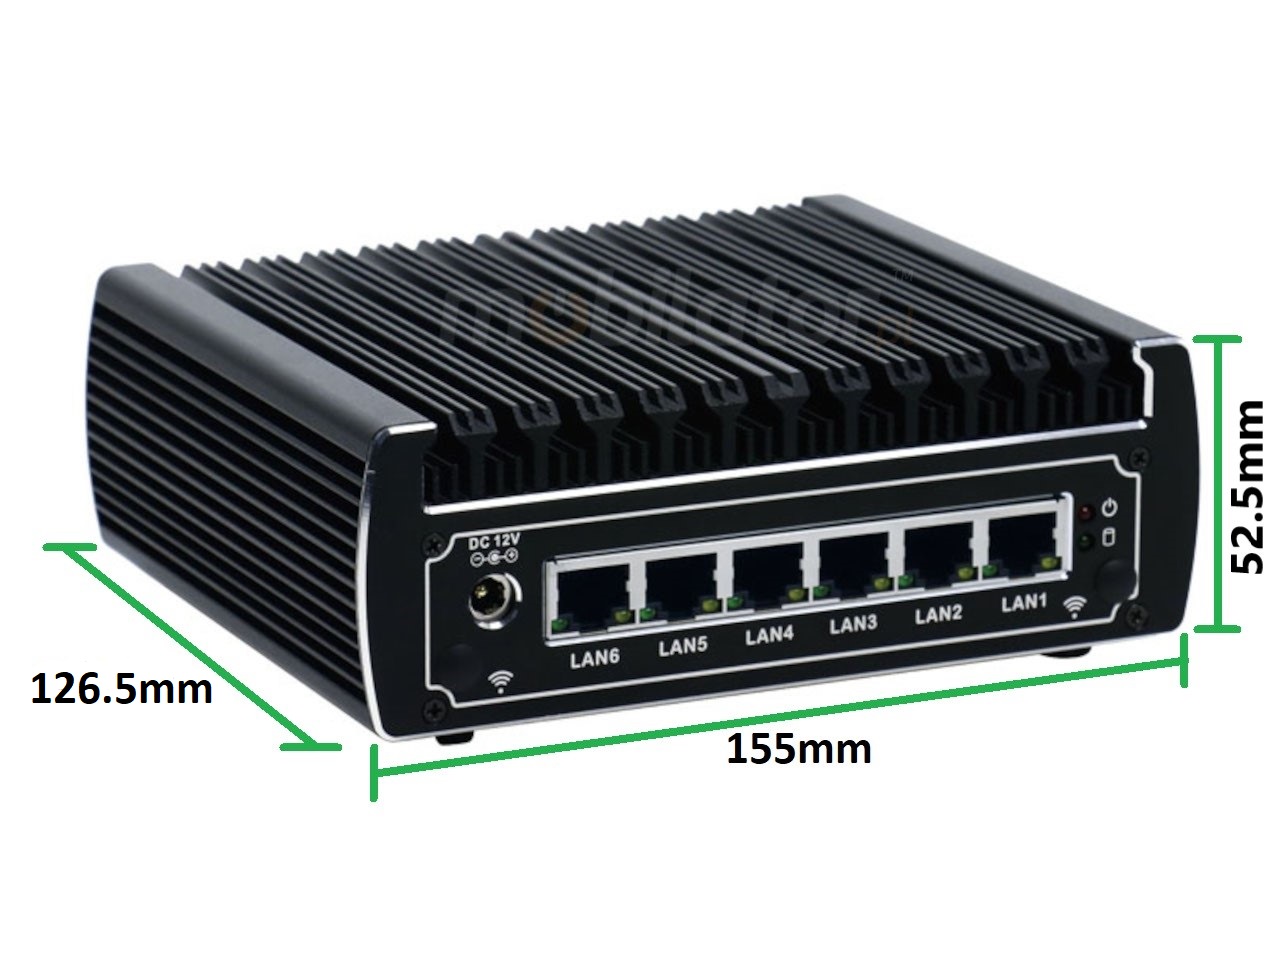   IBOX N133 v.3, wymiary, SSD, DDR4, przemysłowy, mały, szybki, niezawodny, fanless, industrial, small, LAN, INTEL i3